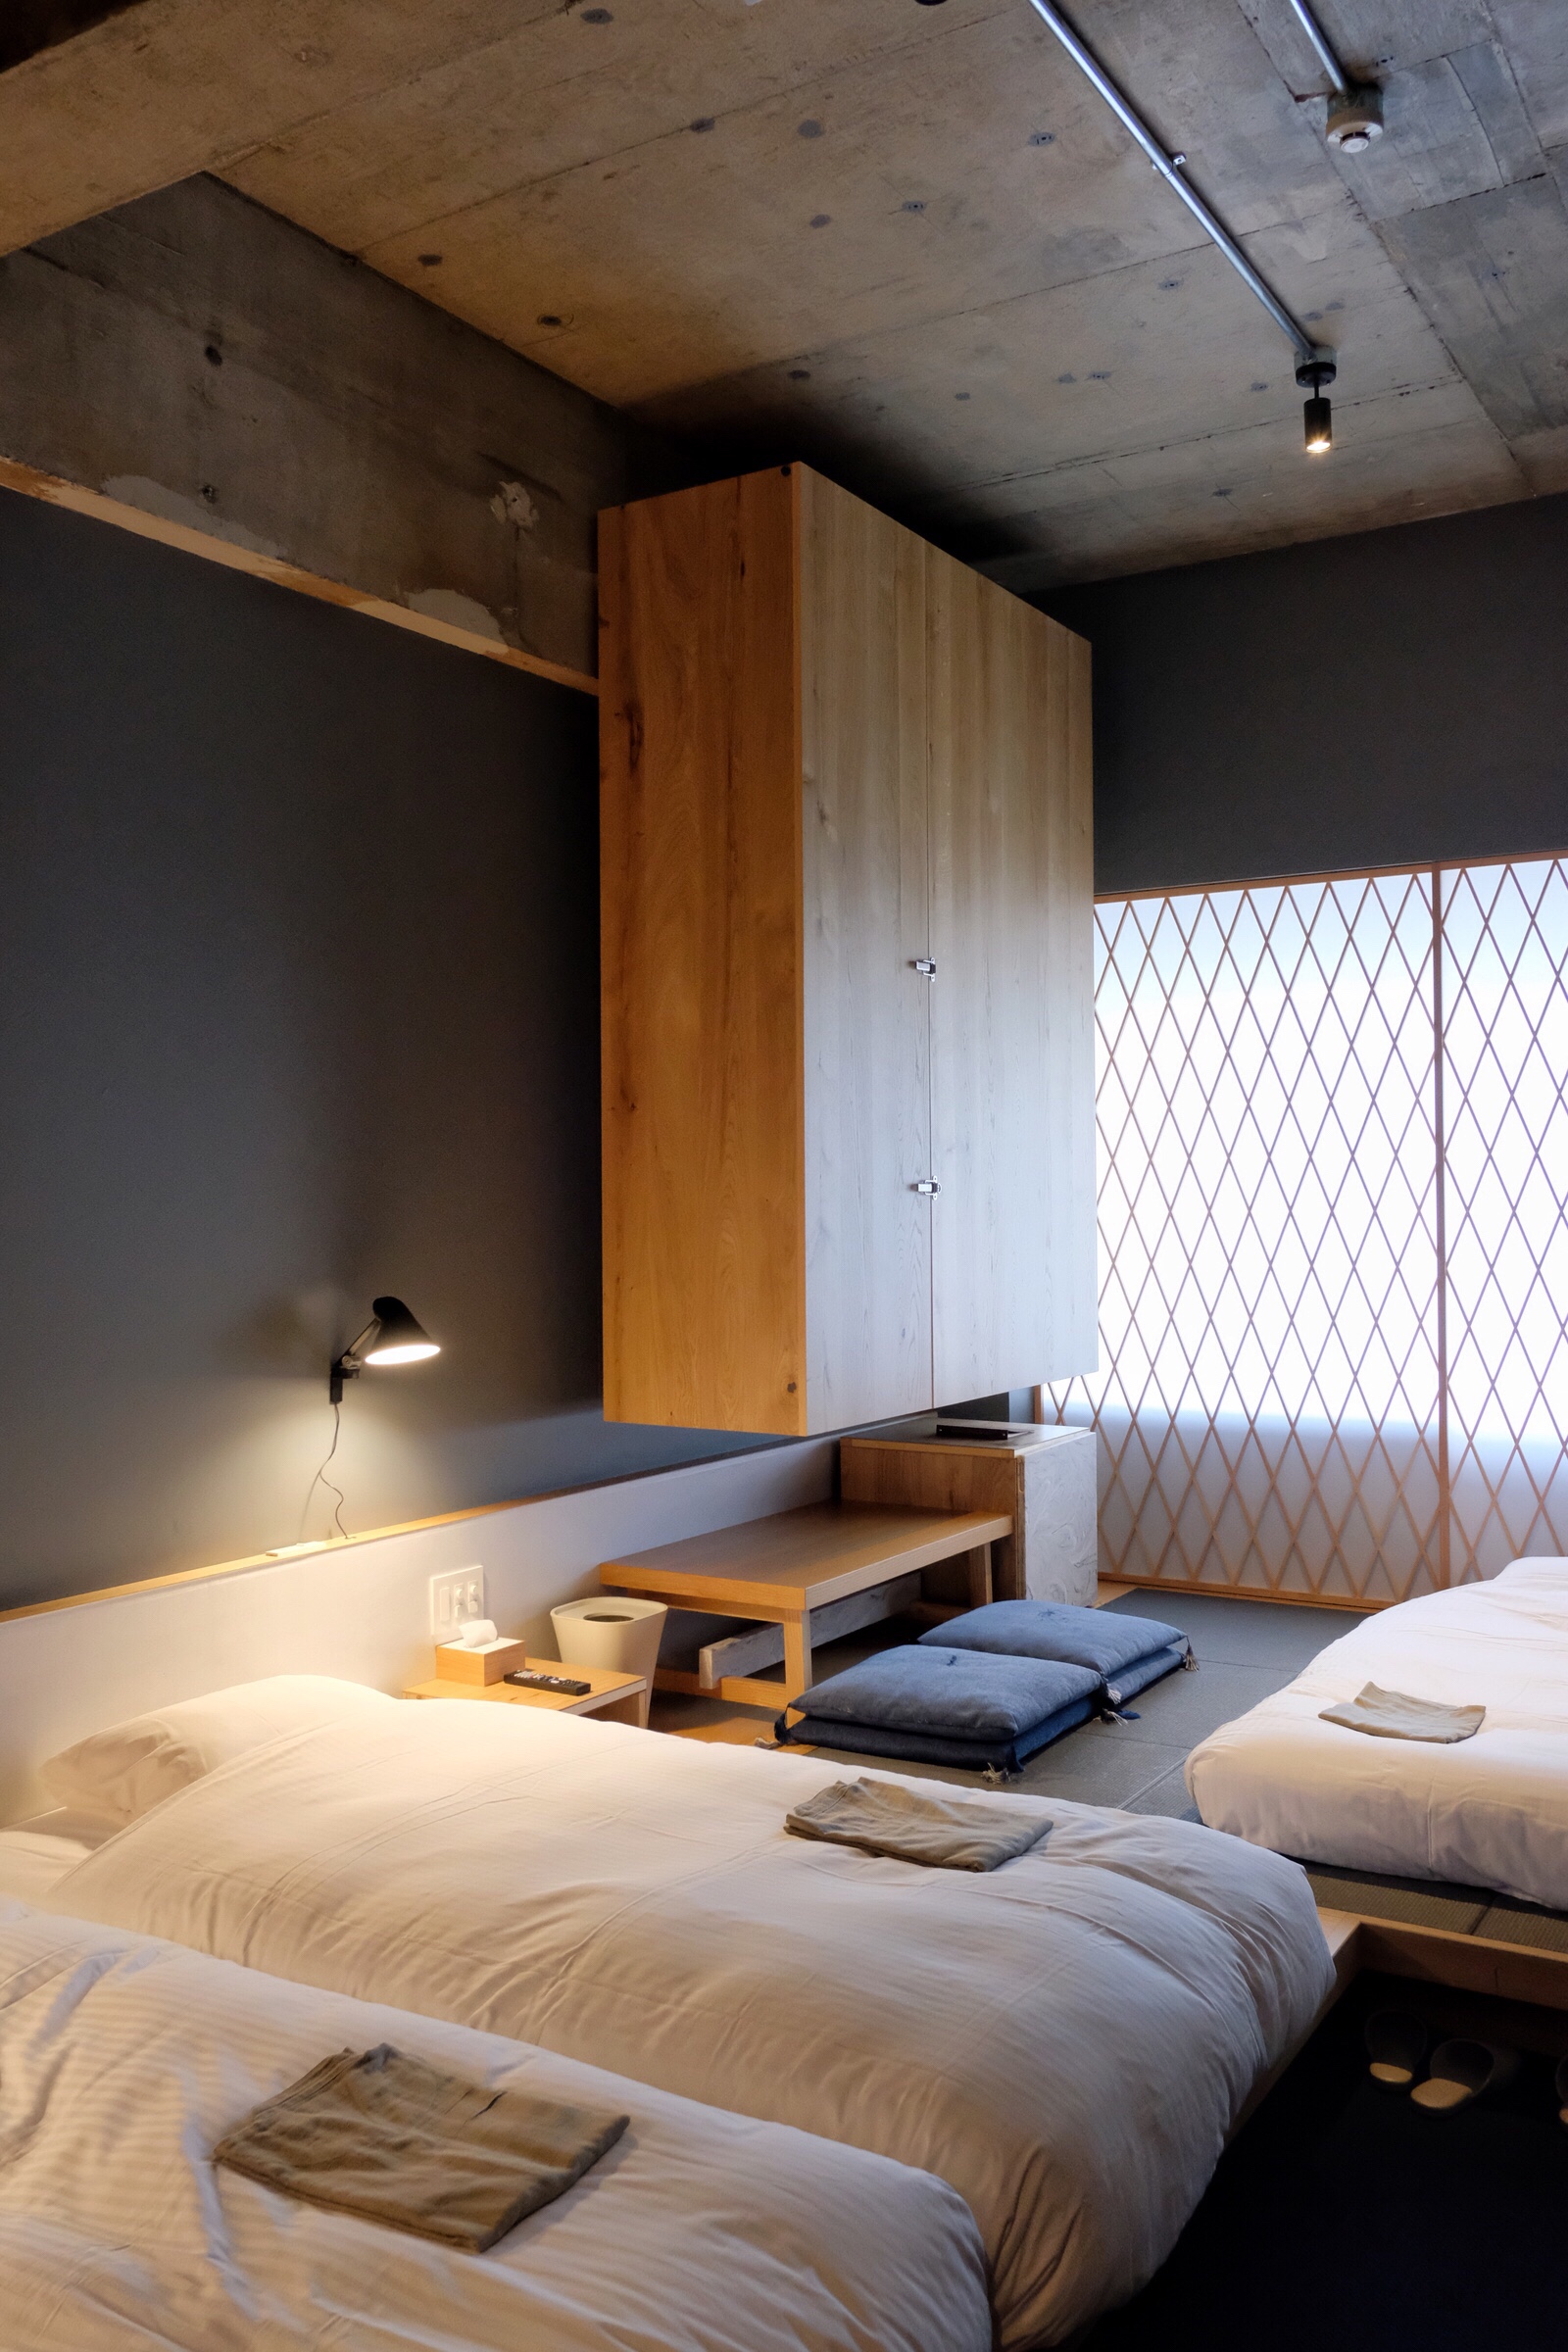 Japan – Kanazawa – We Share Kumu Hotel